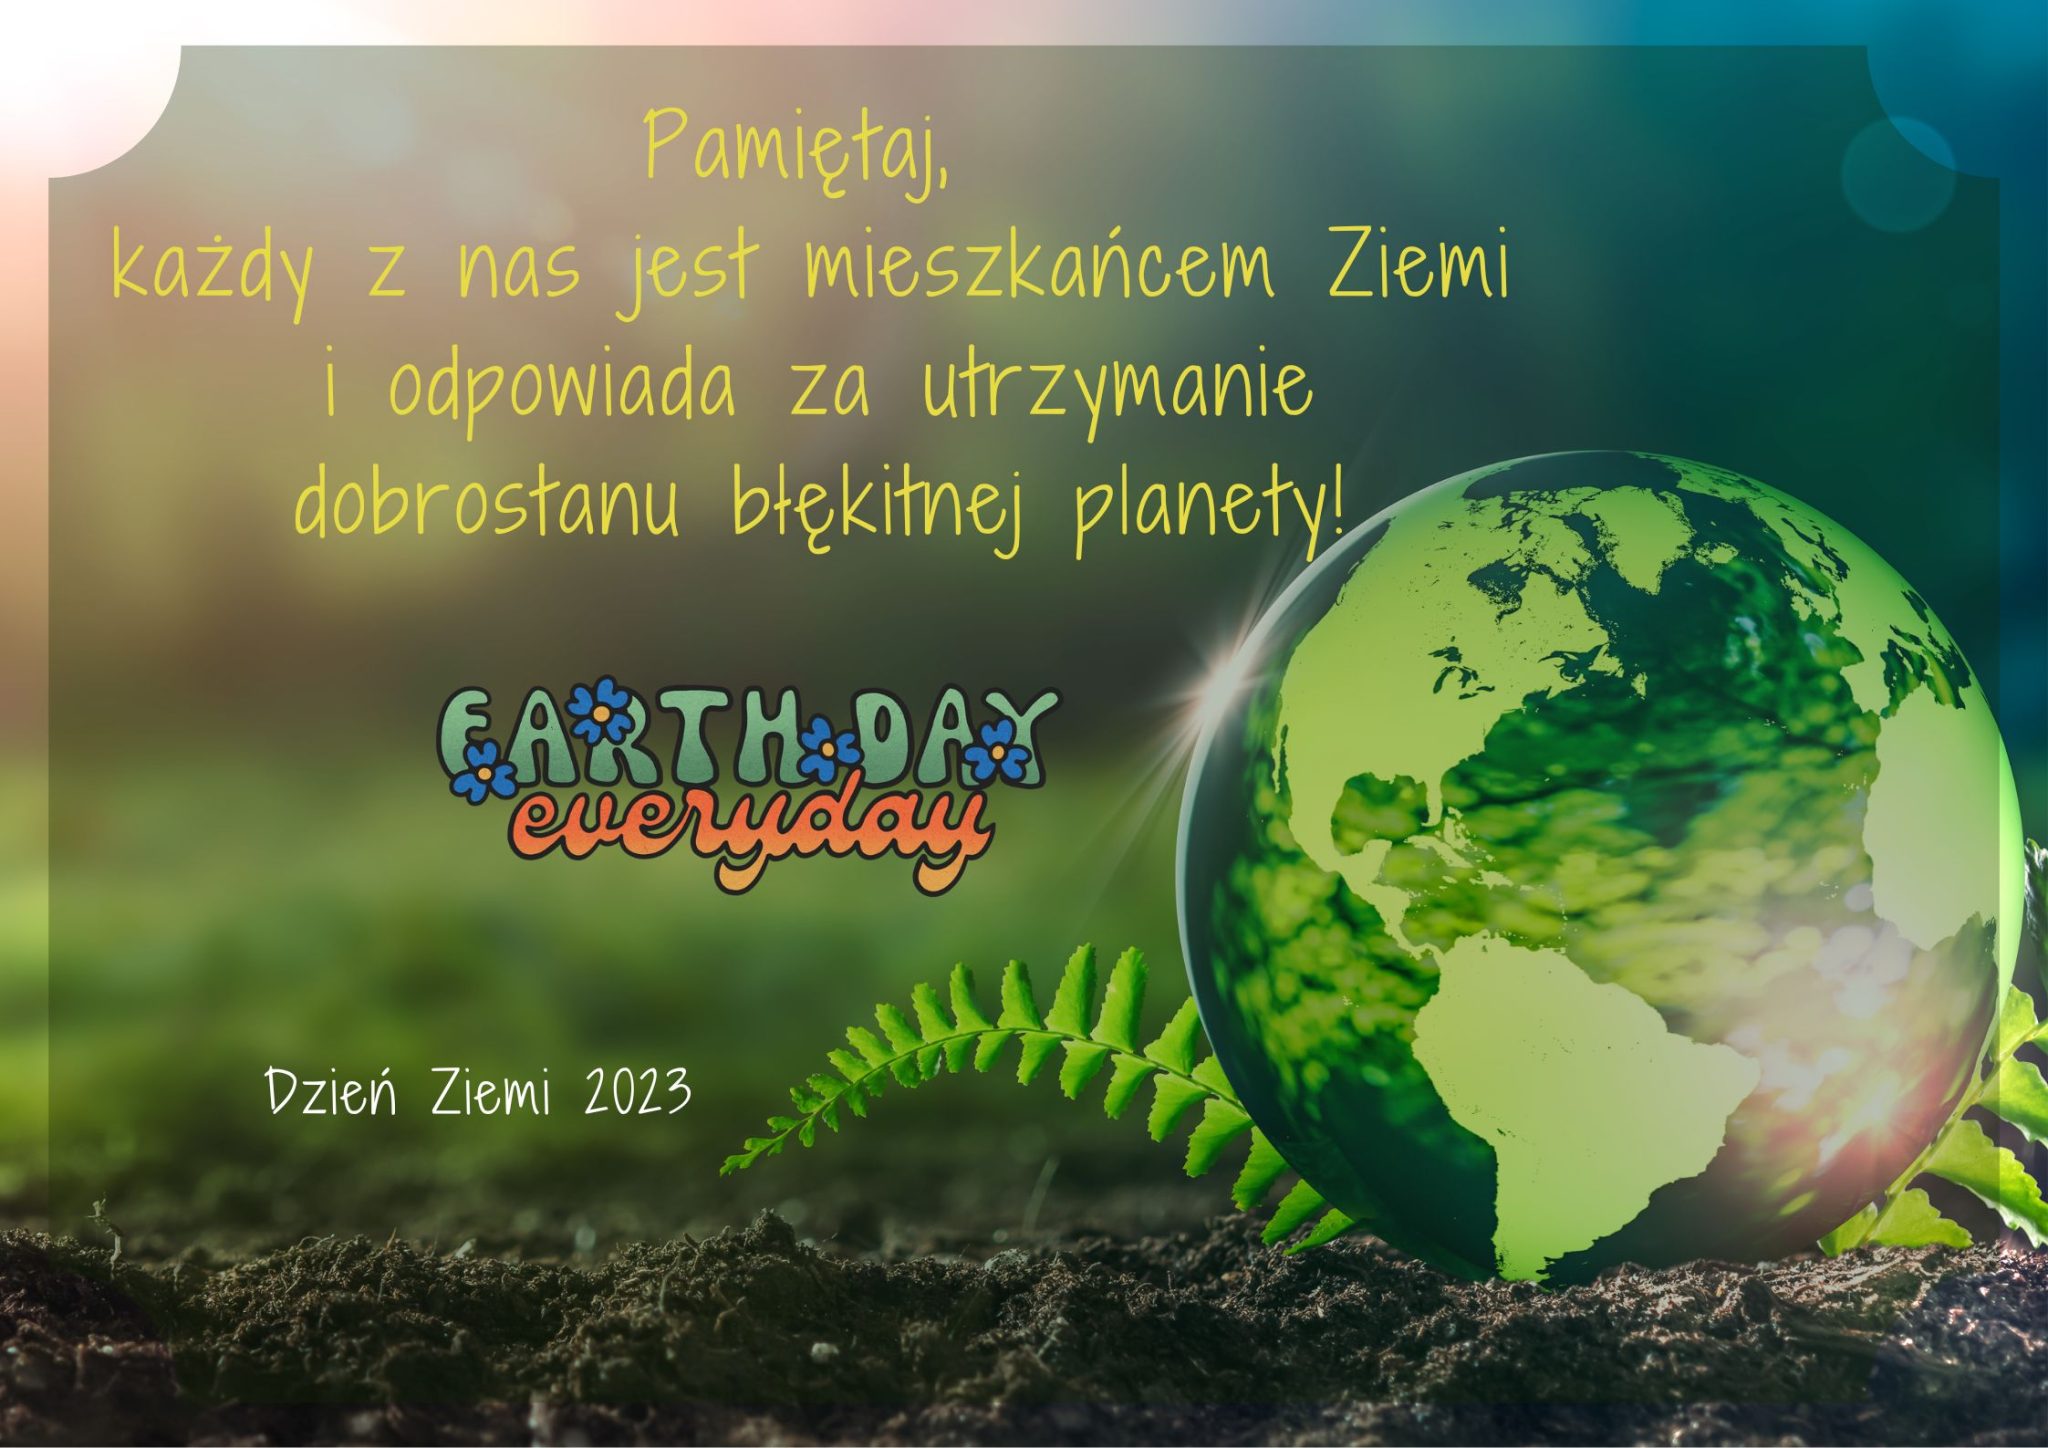 Dzień Ziemi – Earth day - everyday. Pamiętaj, każdy z nas jest mieszkańcem Ziemi i odpowiada za utrzymanie dobrostanu błękitnej planety!